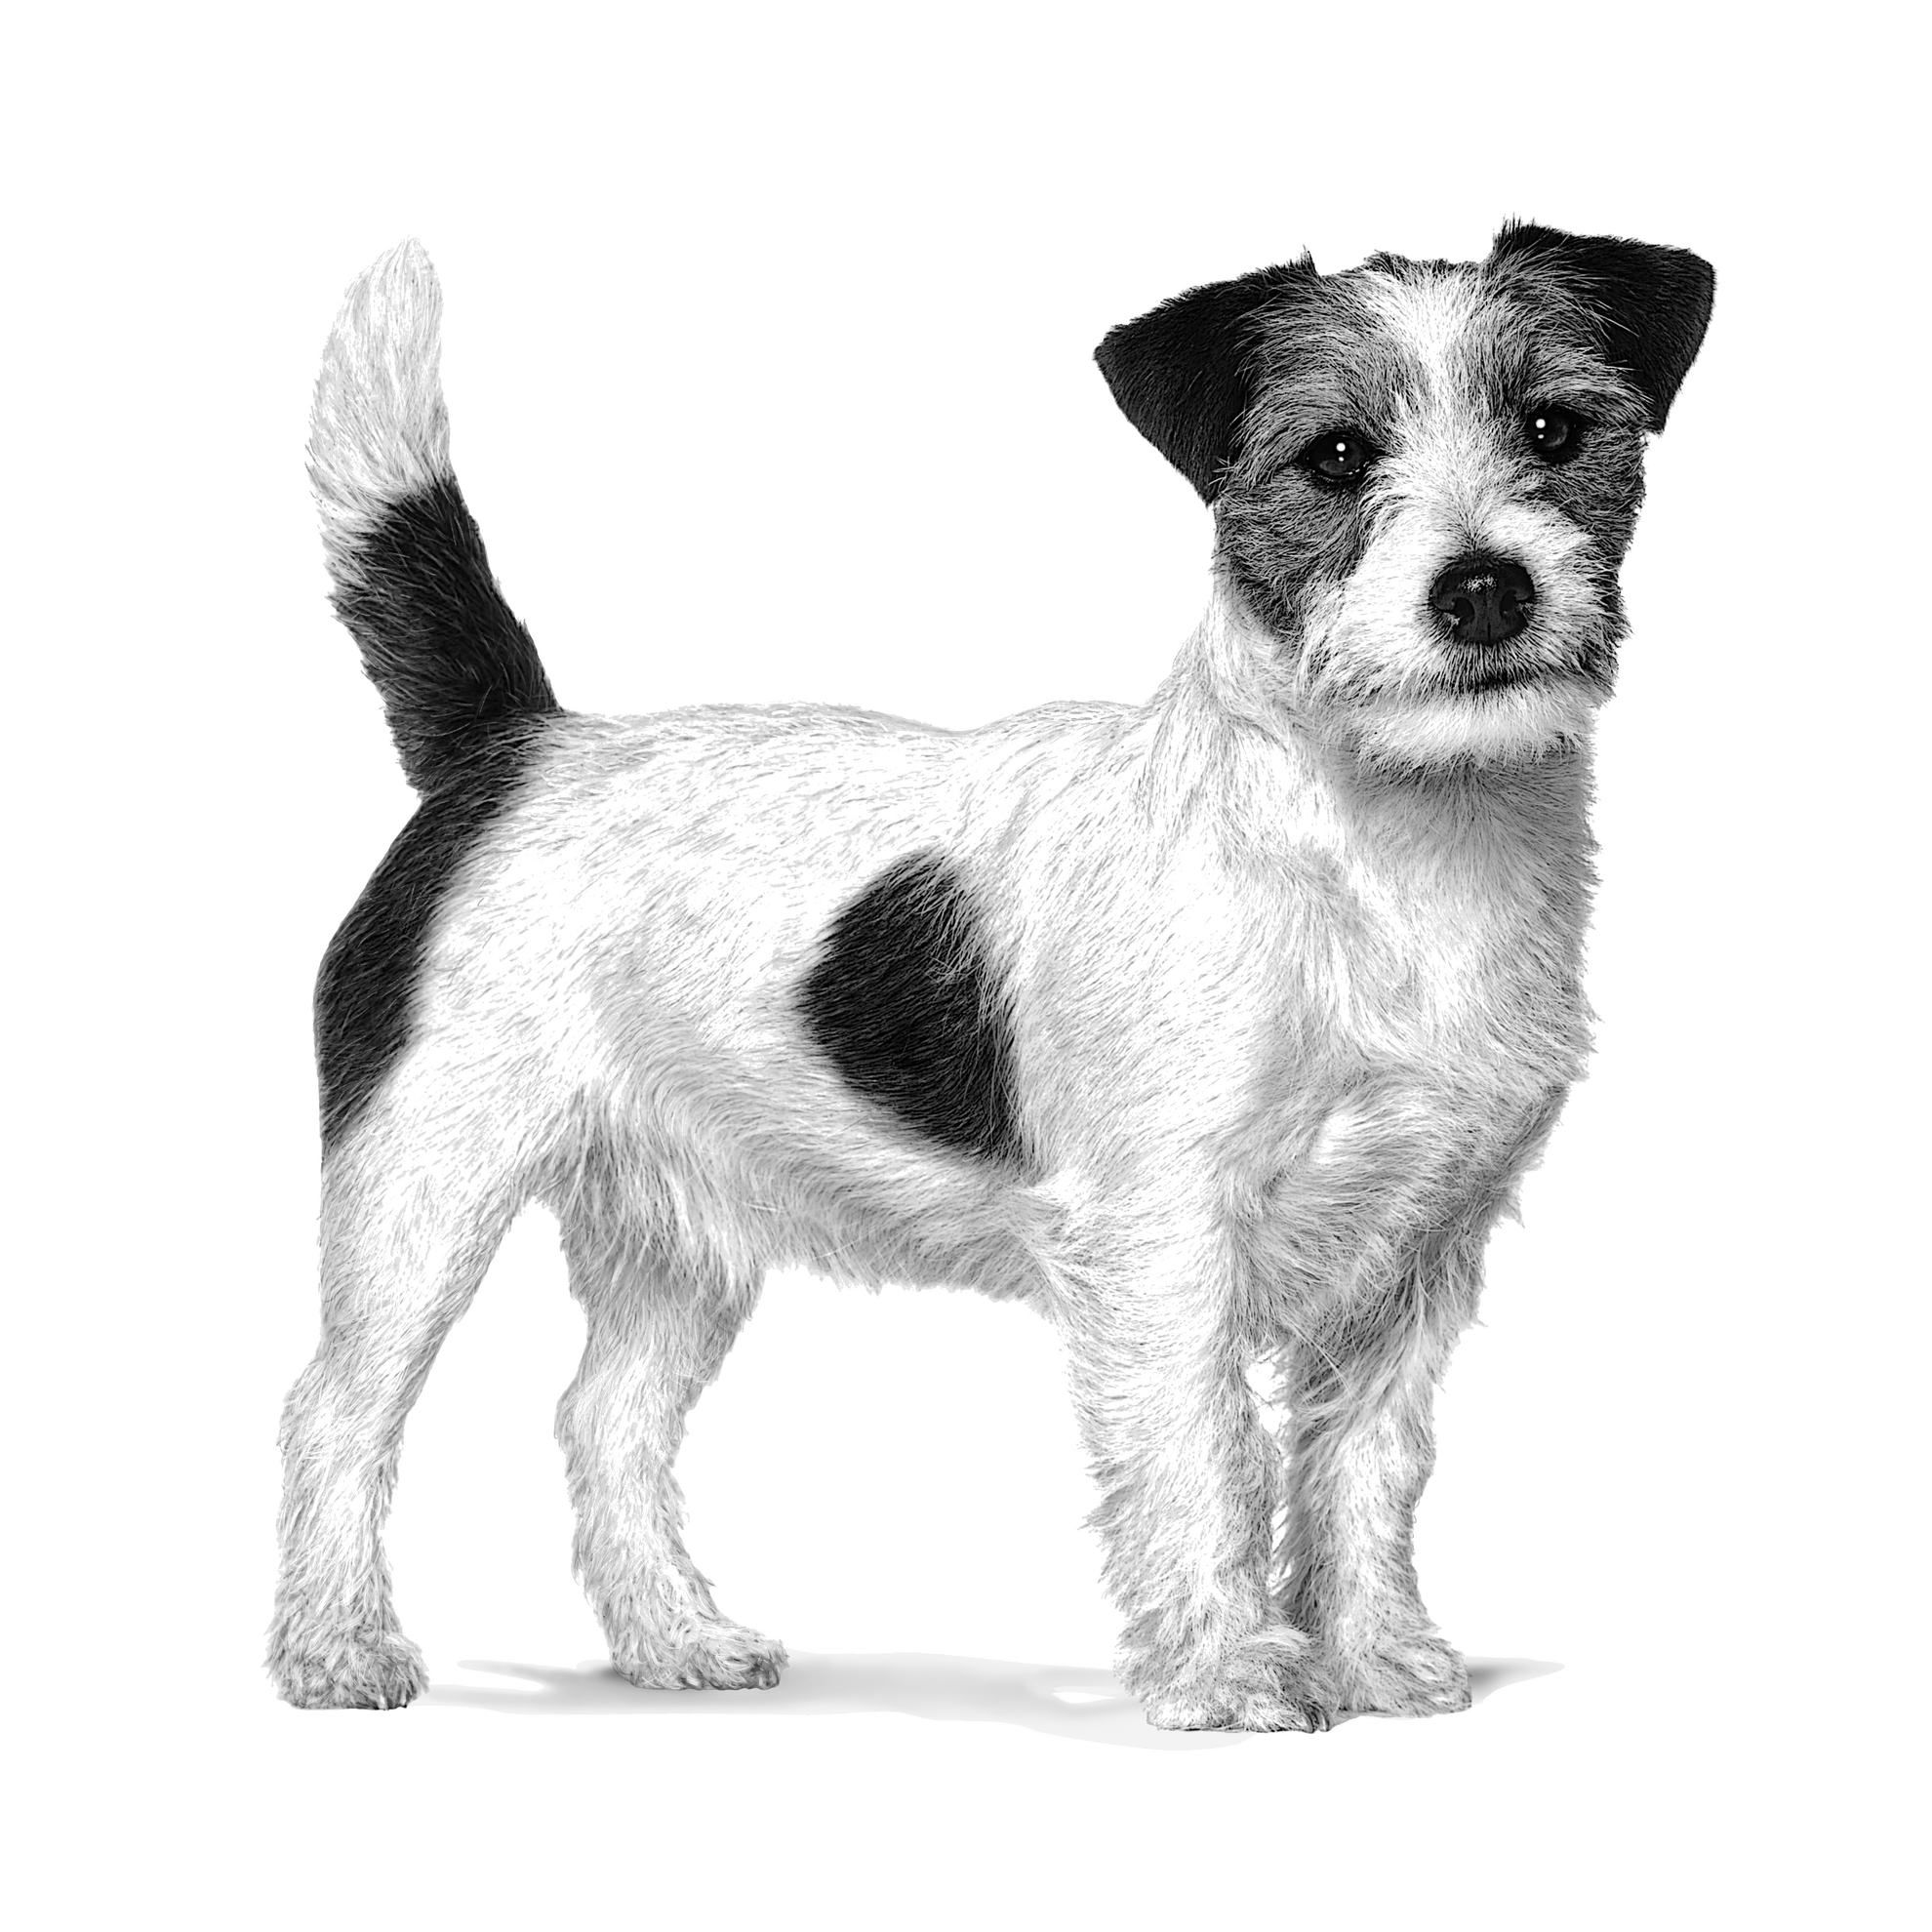 Neutered Adult Small Dogs - Aliment vétérinaire pour chien